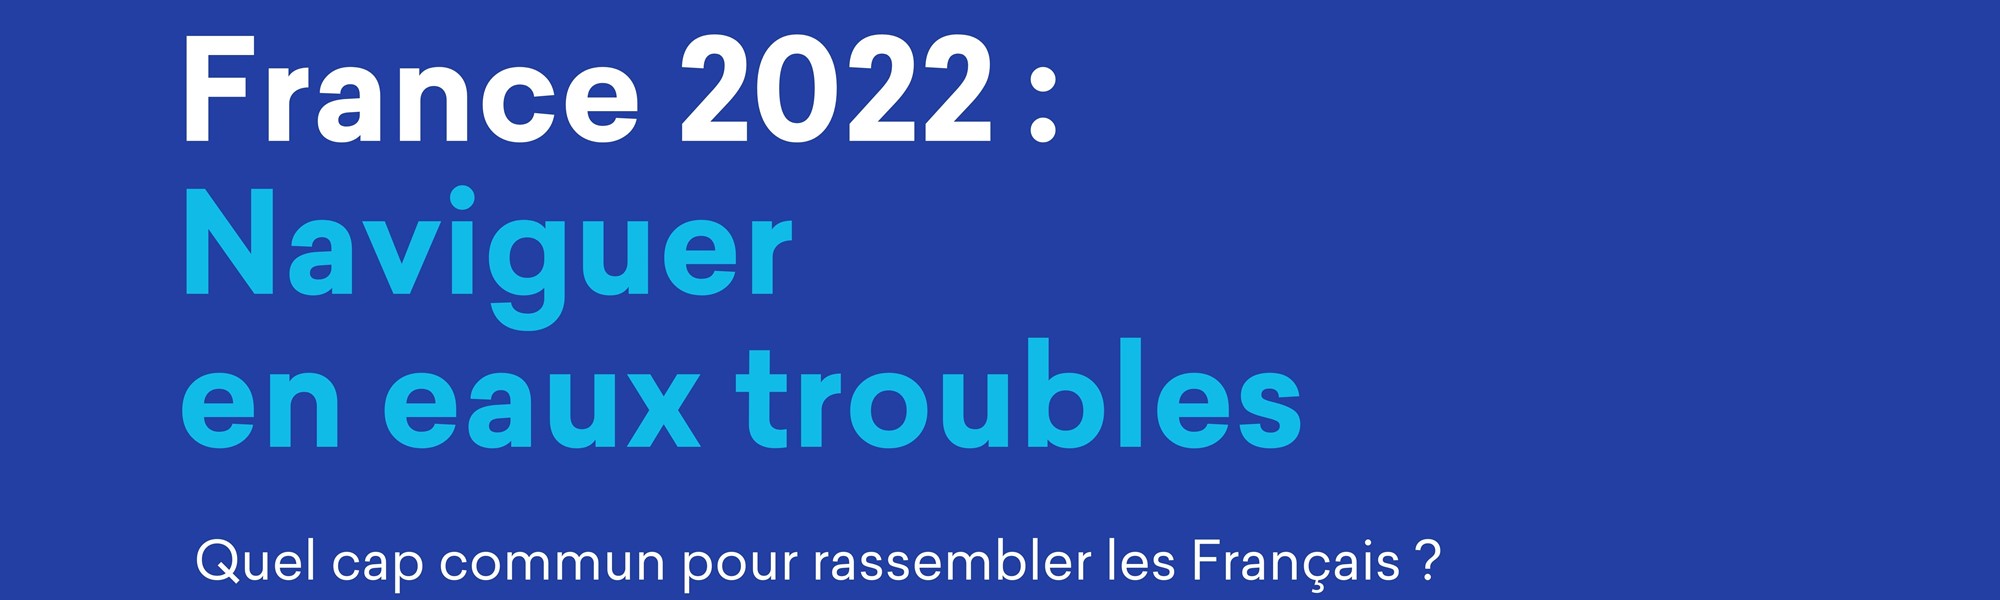 France 2022 : Naviguer en eaux troubles